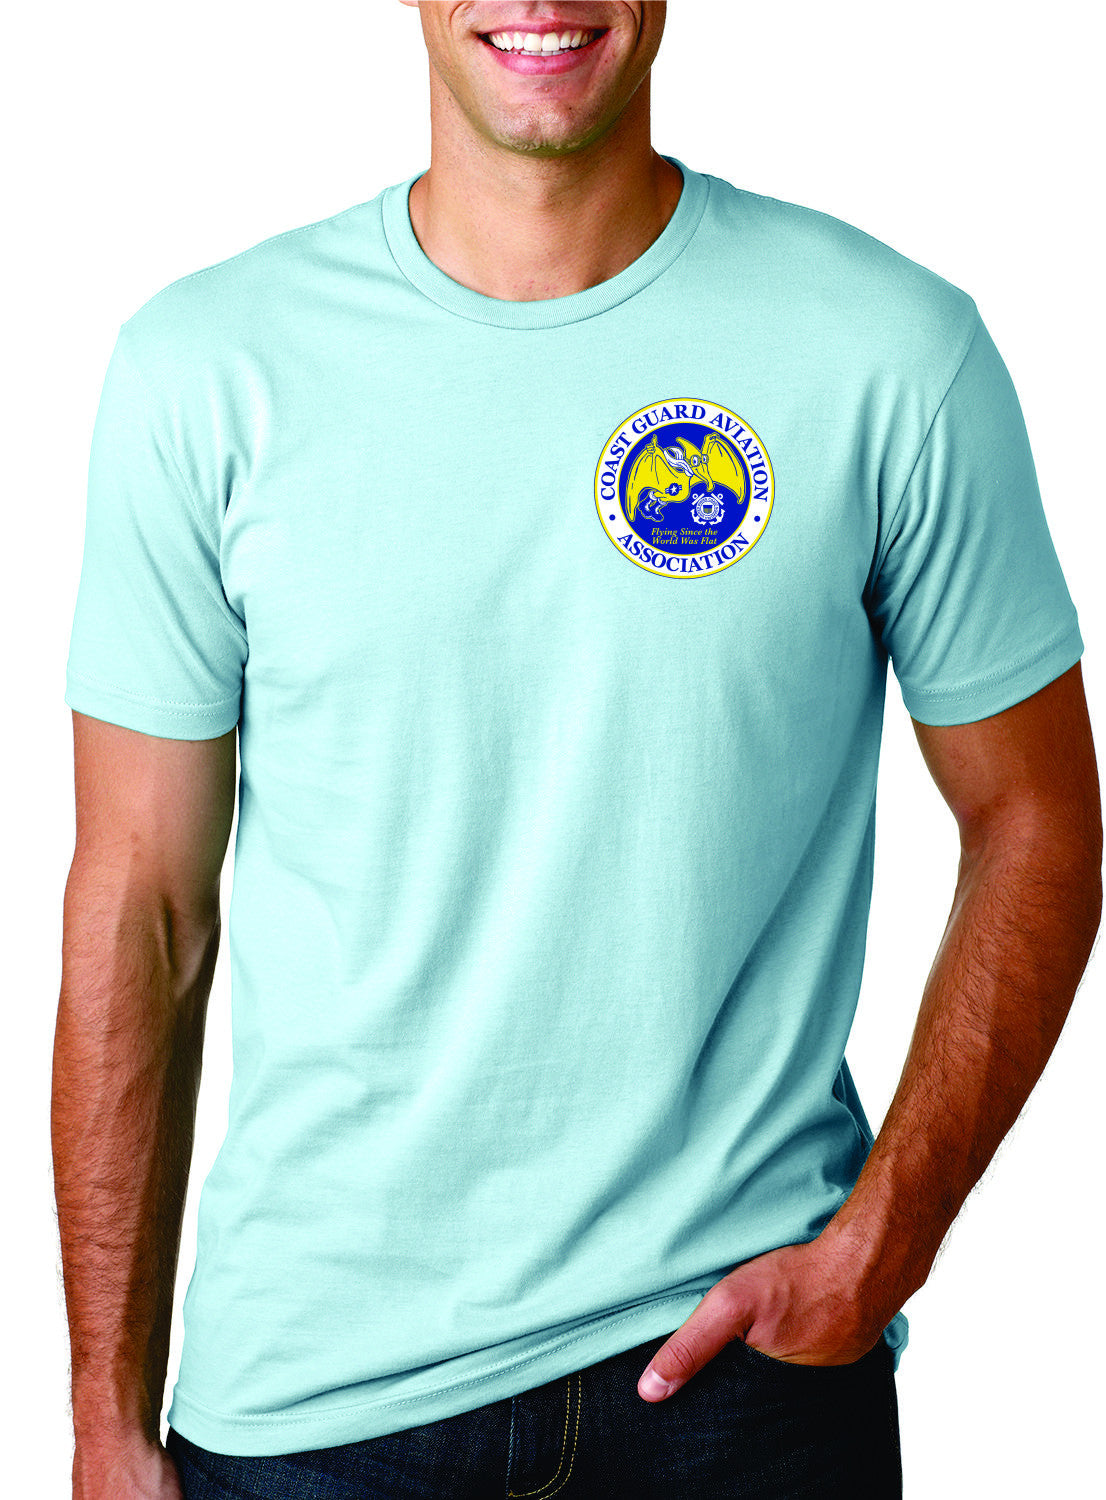 Centennial Roost Cotton T-shirt - Coast Guard Aviation